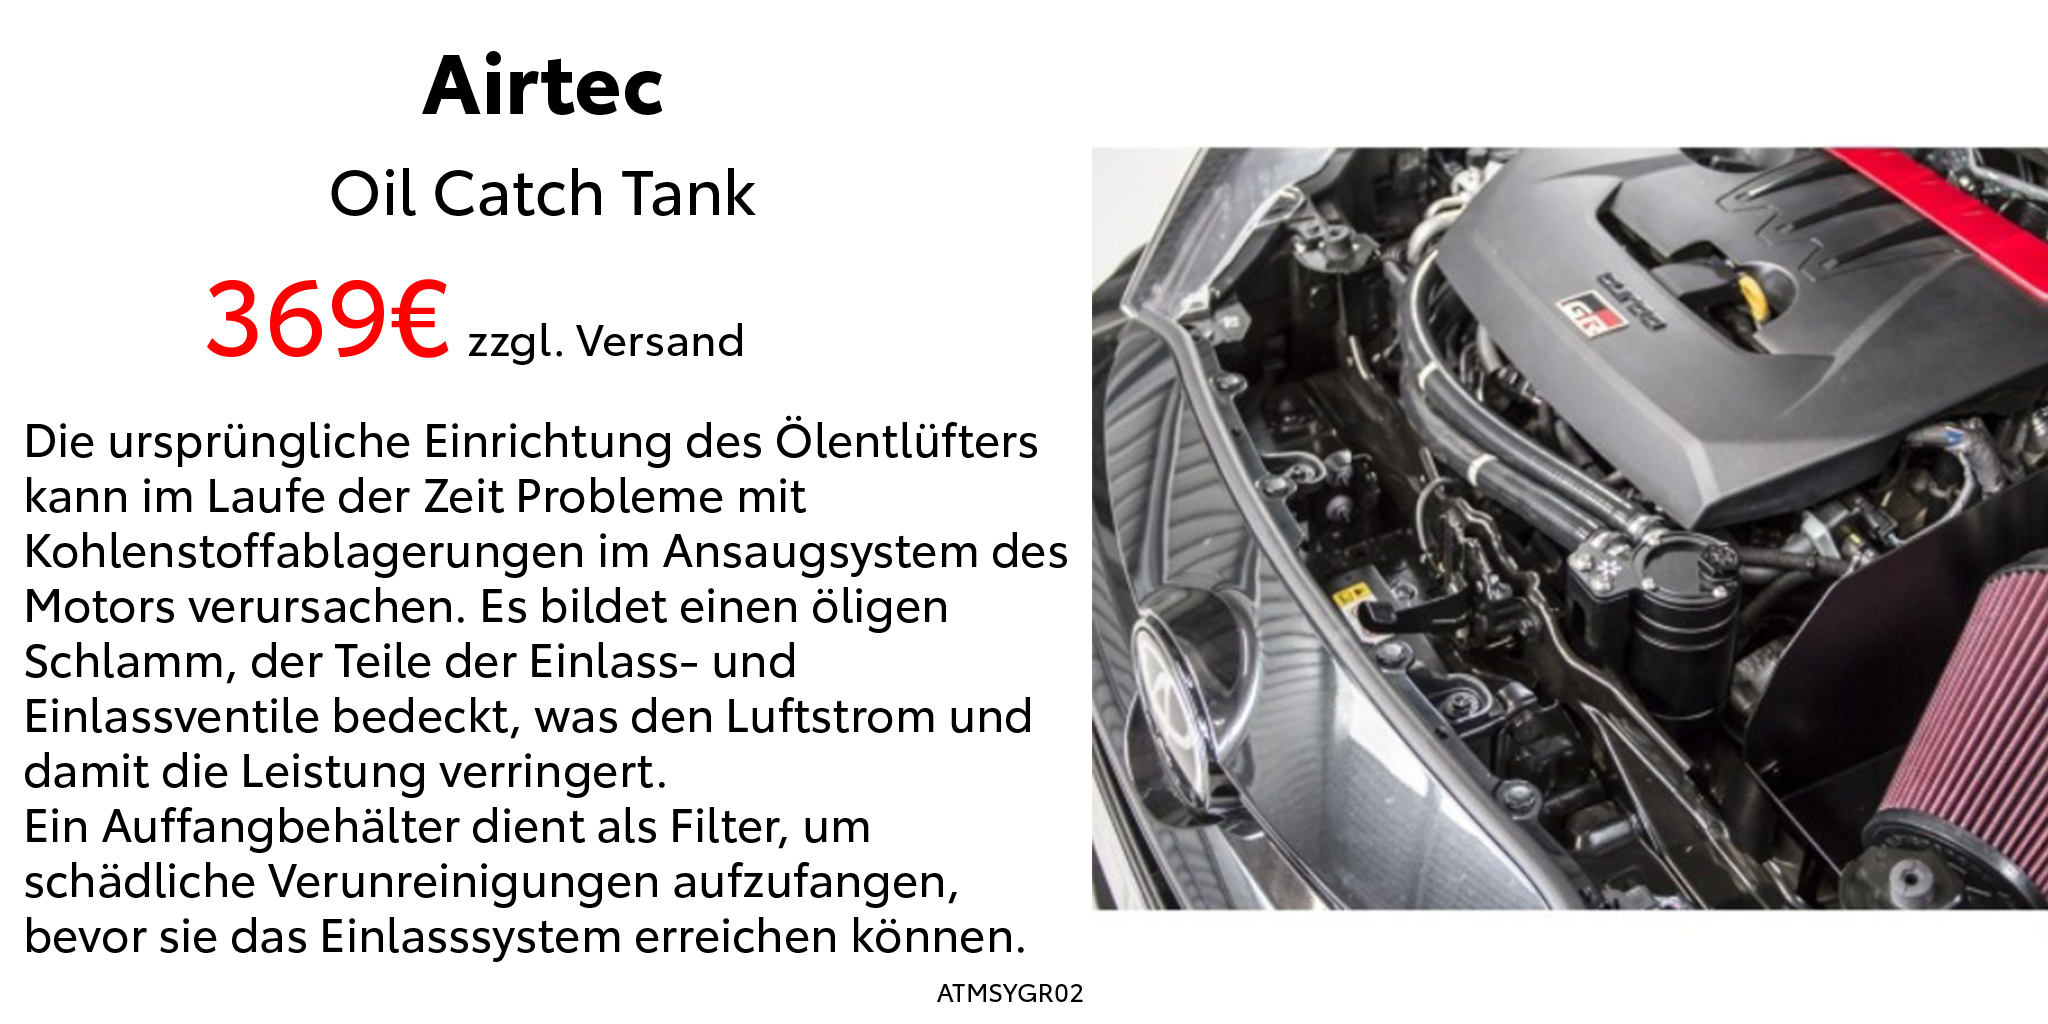 Airtec-Catch-Tank